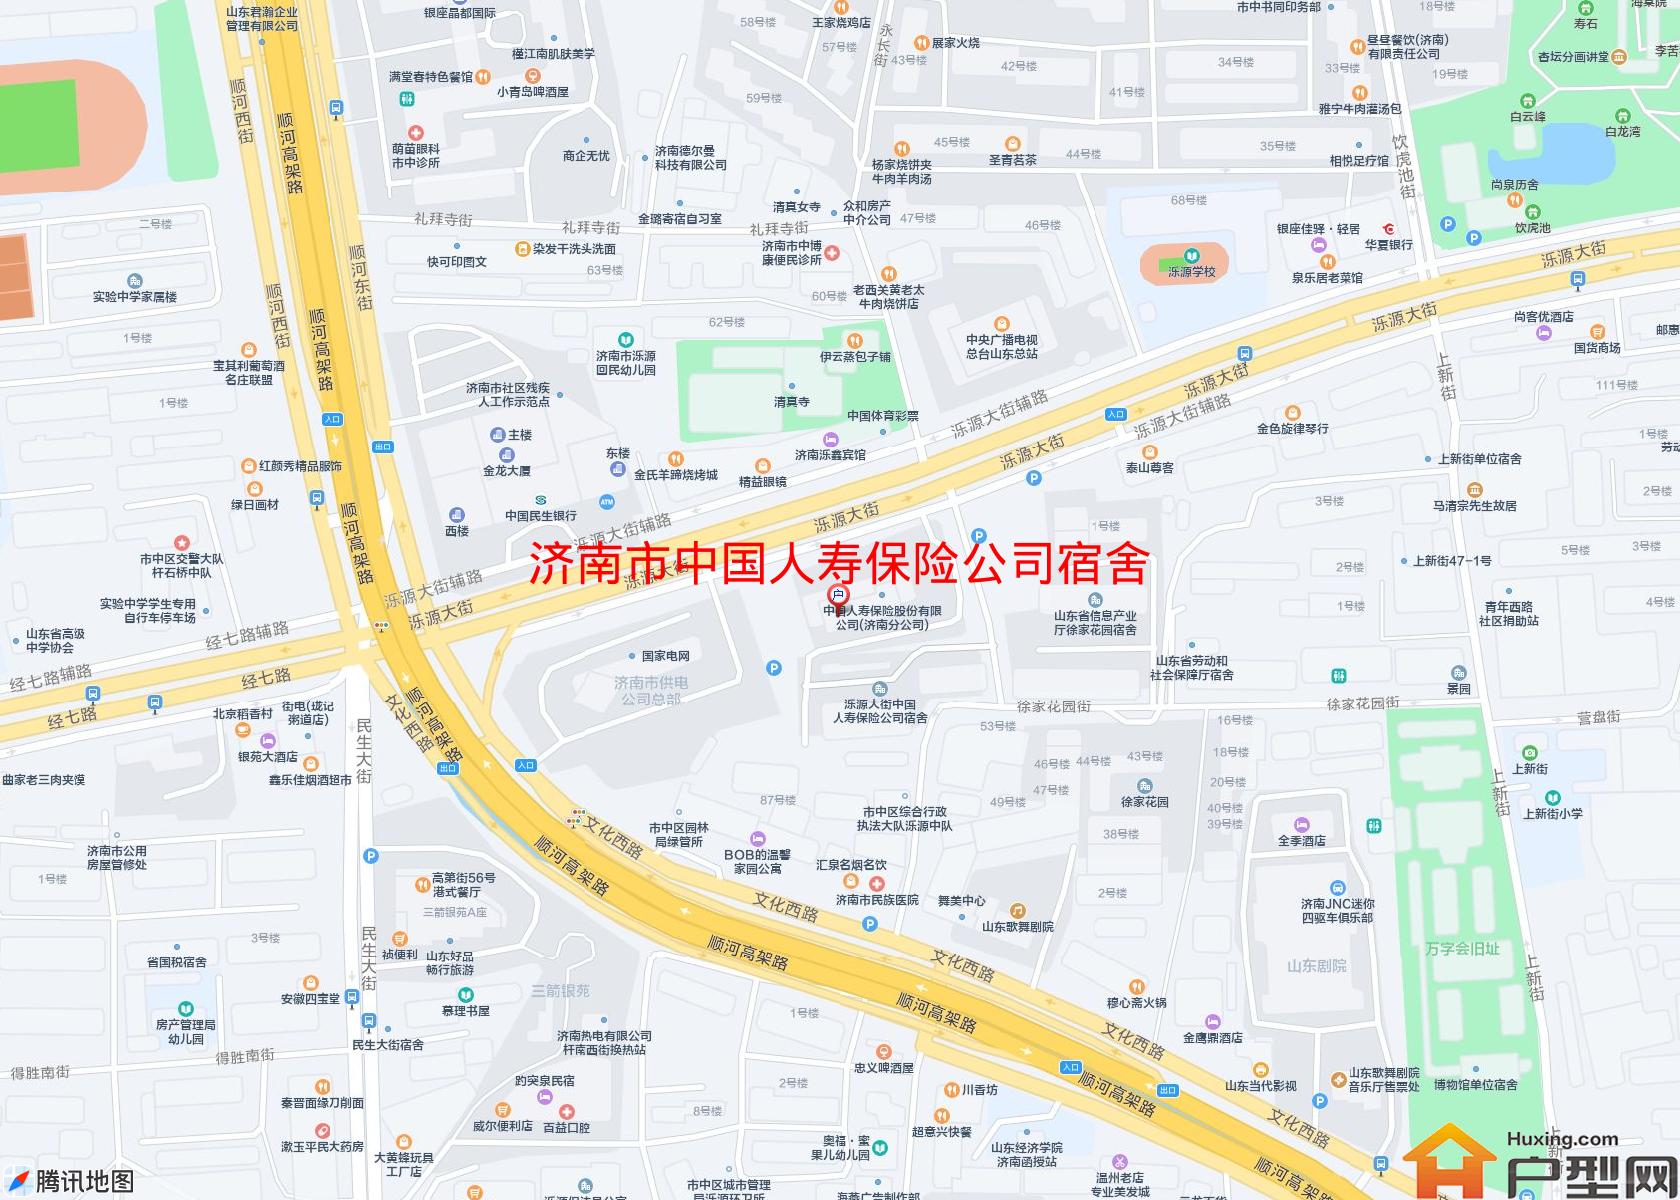 中国人寿保险公司宿舍小区 - 户型网